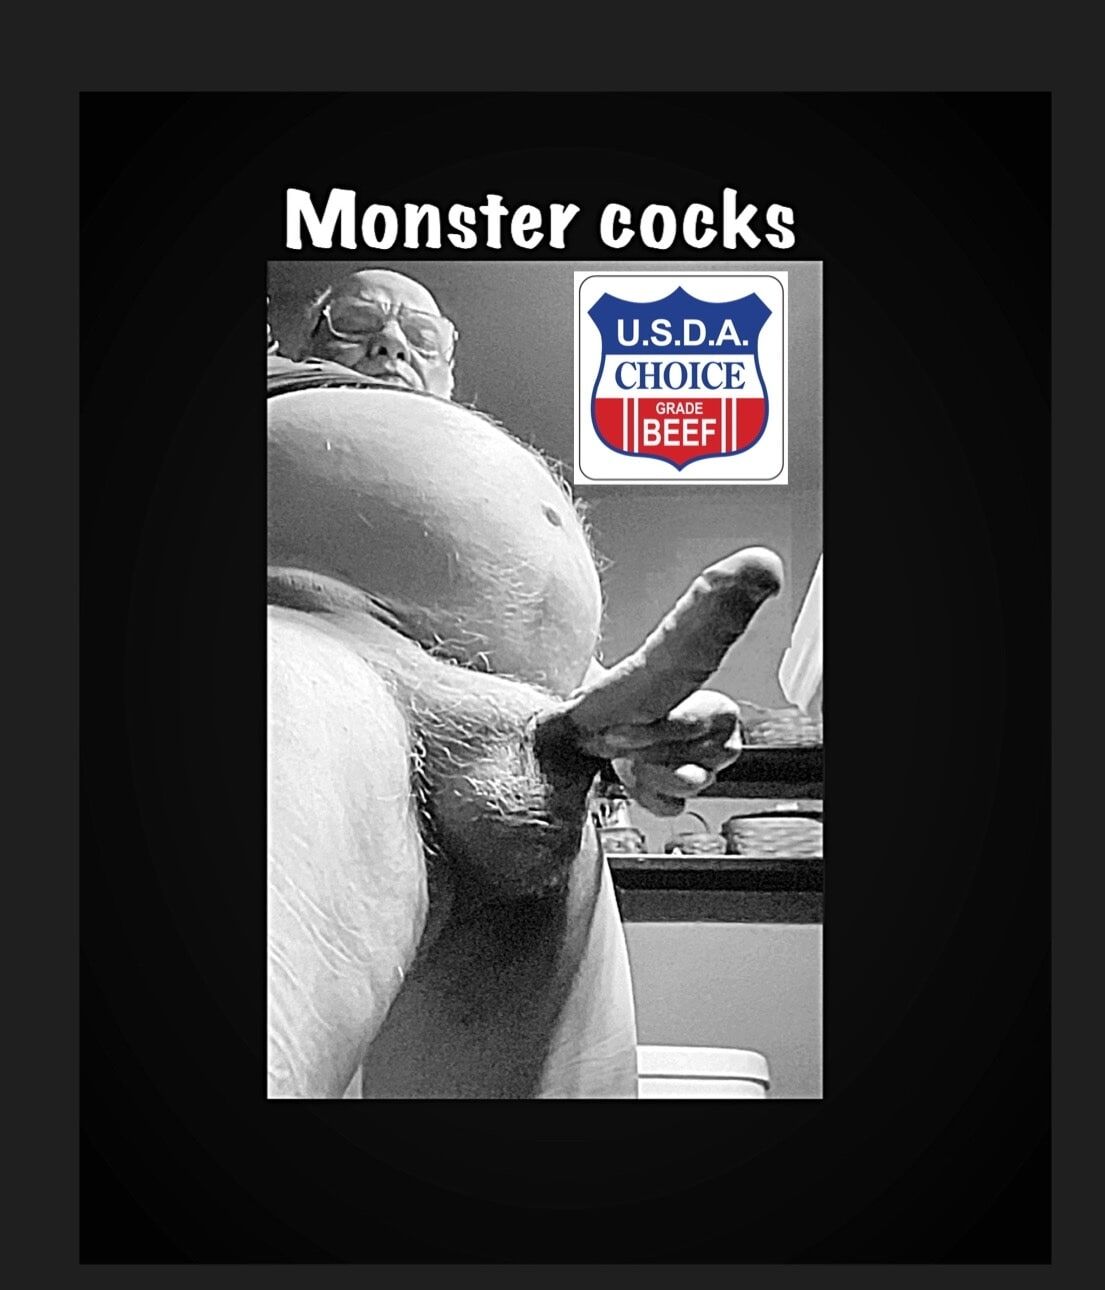 Monster cocks